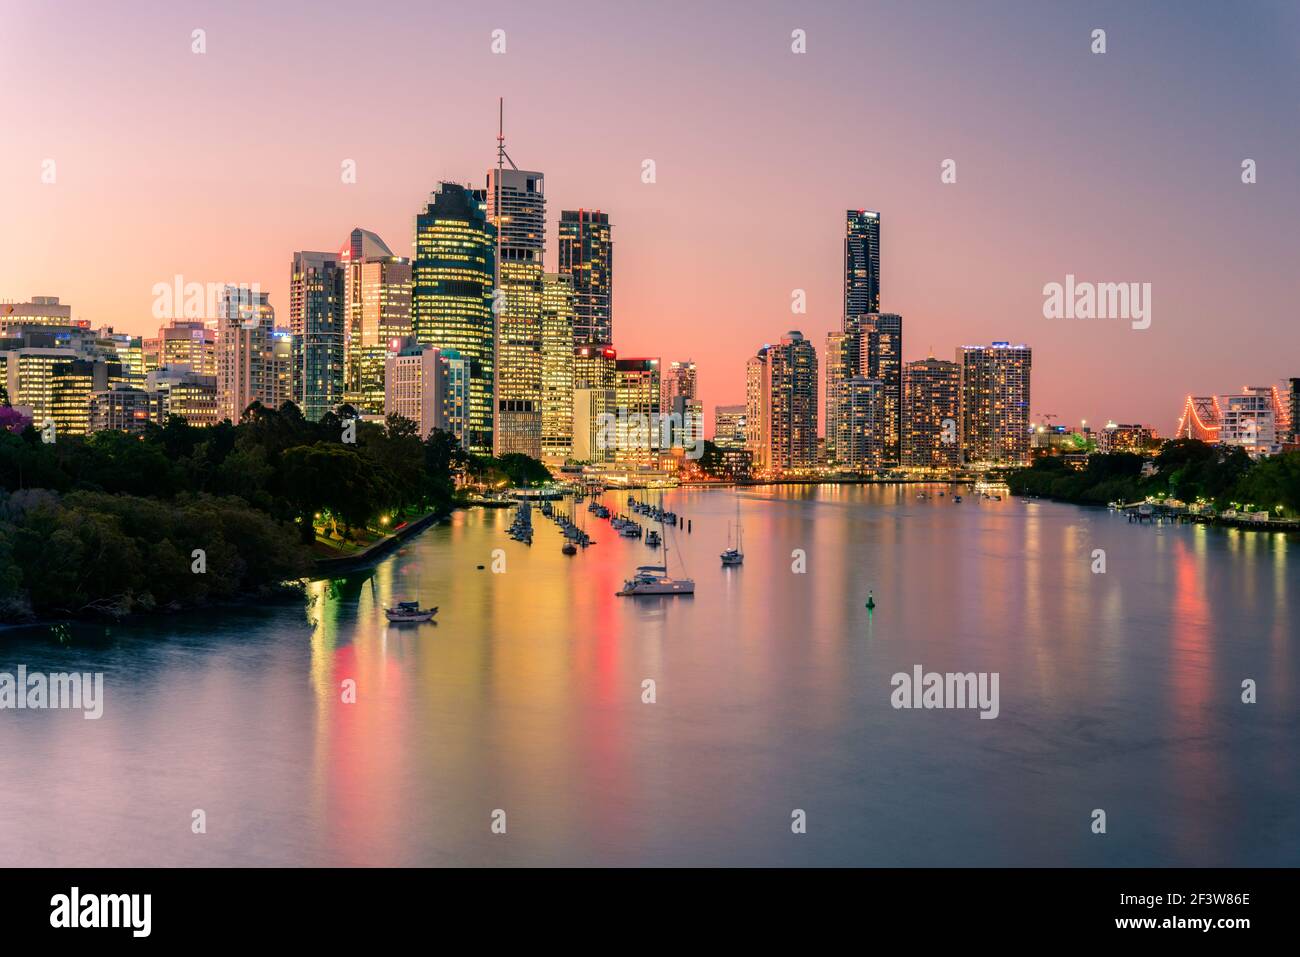 Gli edifici della città di Brisbane e il fiume si affacciano al tramonto da Kangaroo Point. Brisbane è la capitale dello stato del Queensland, Australia. Foto Stock